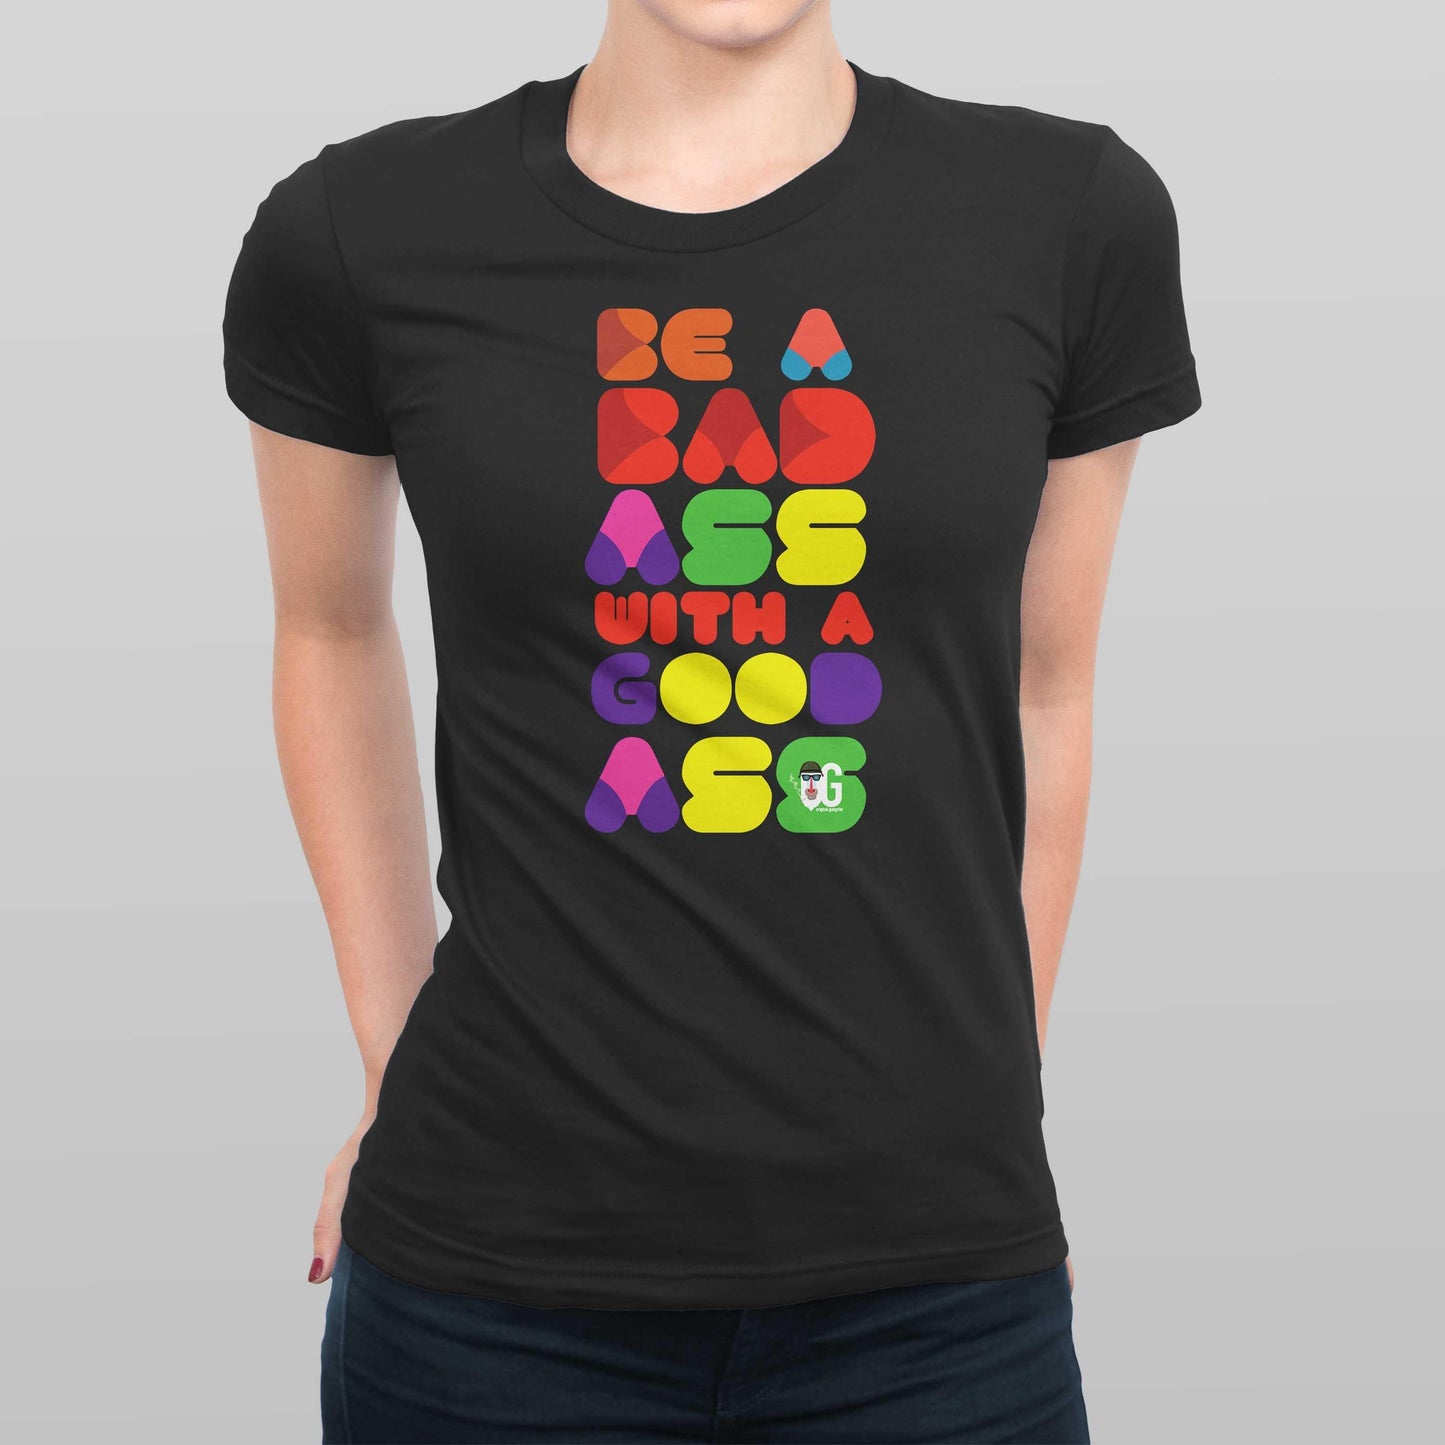 Bad Ass With A Good Ass Women's T-shirt - oglife.in